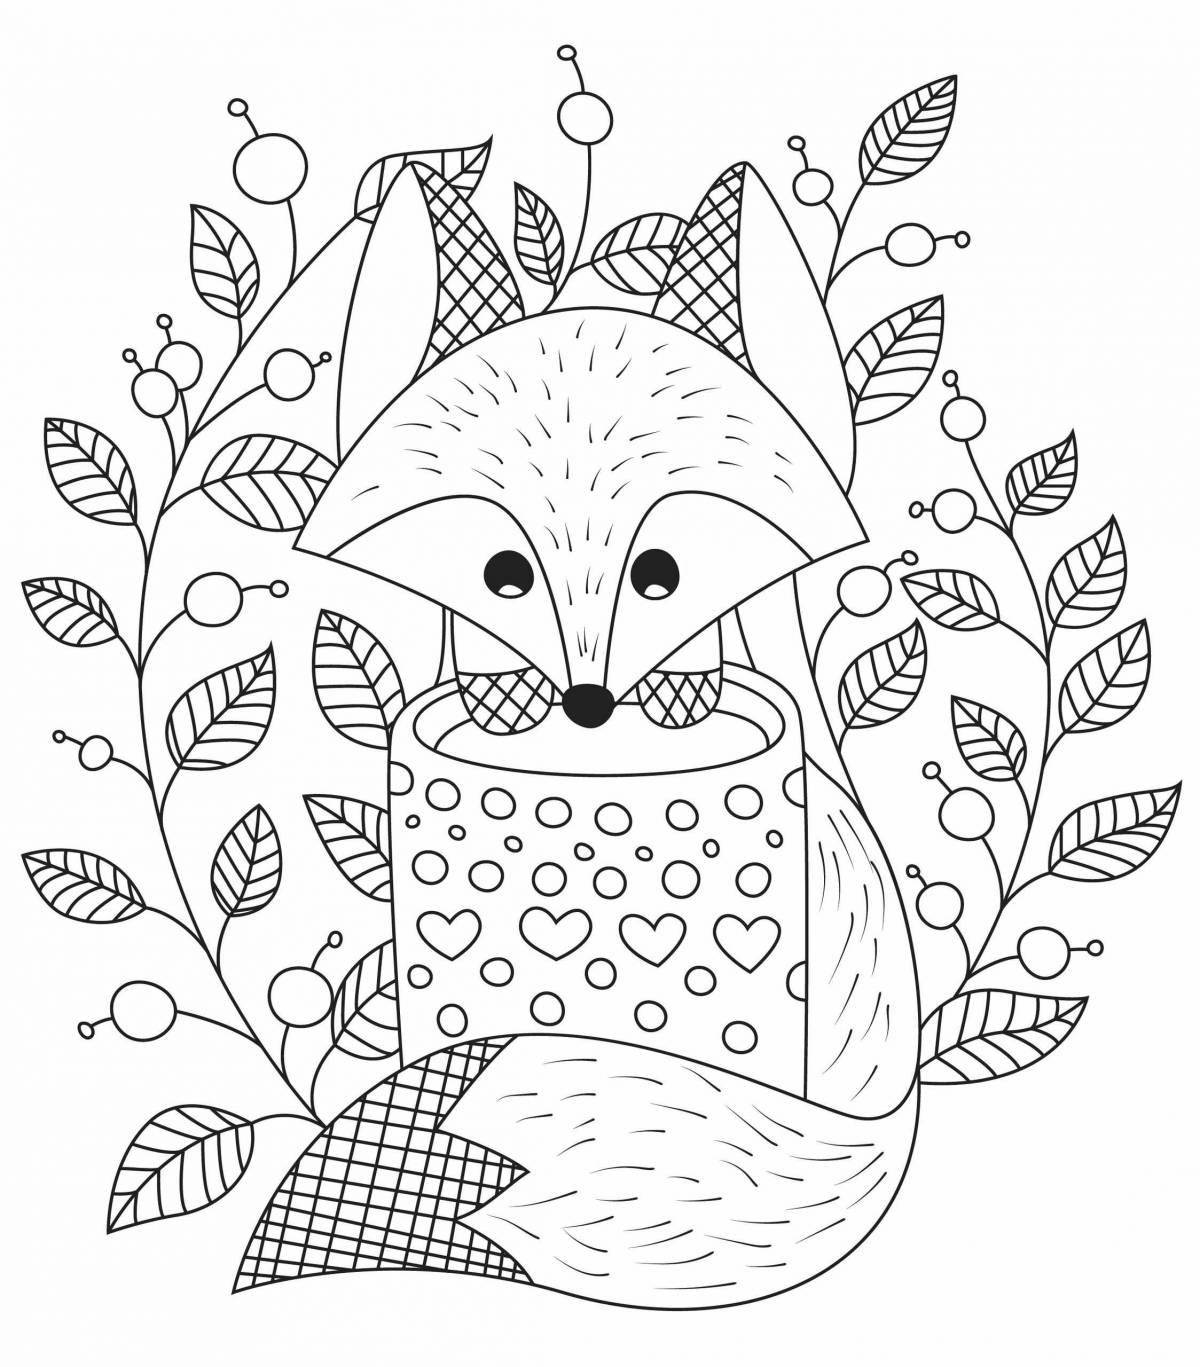 Fun anti-stress fox coloring book